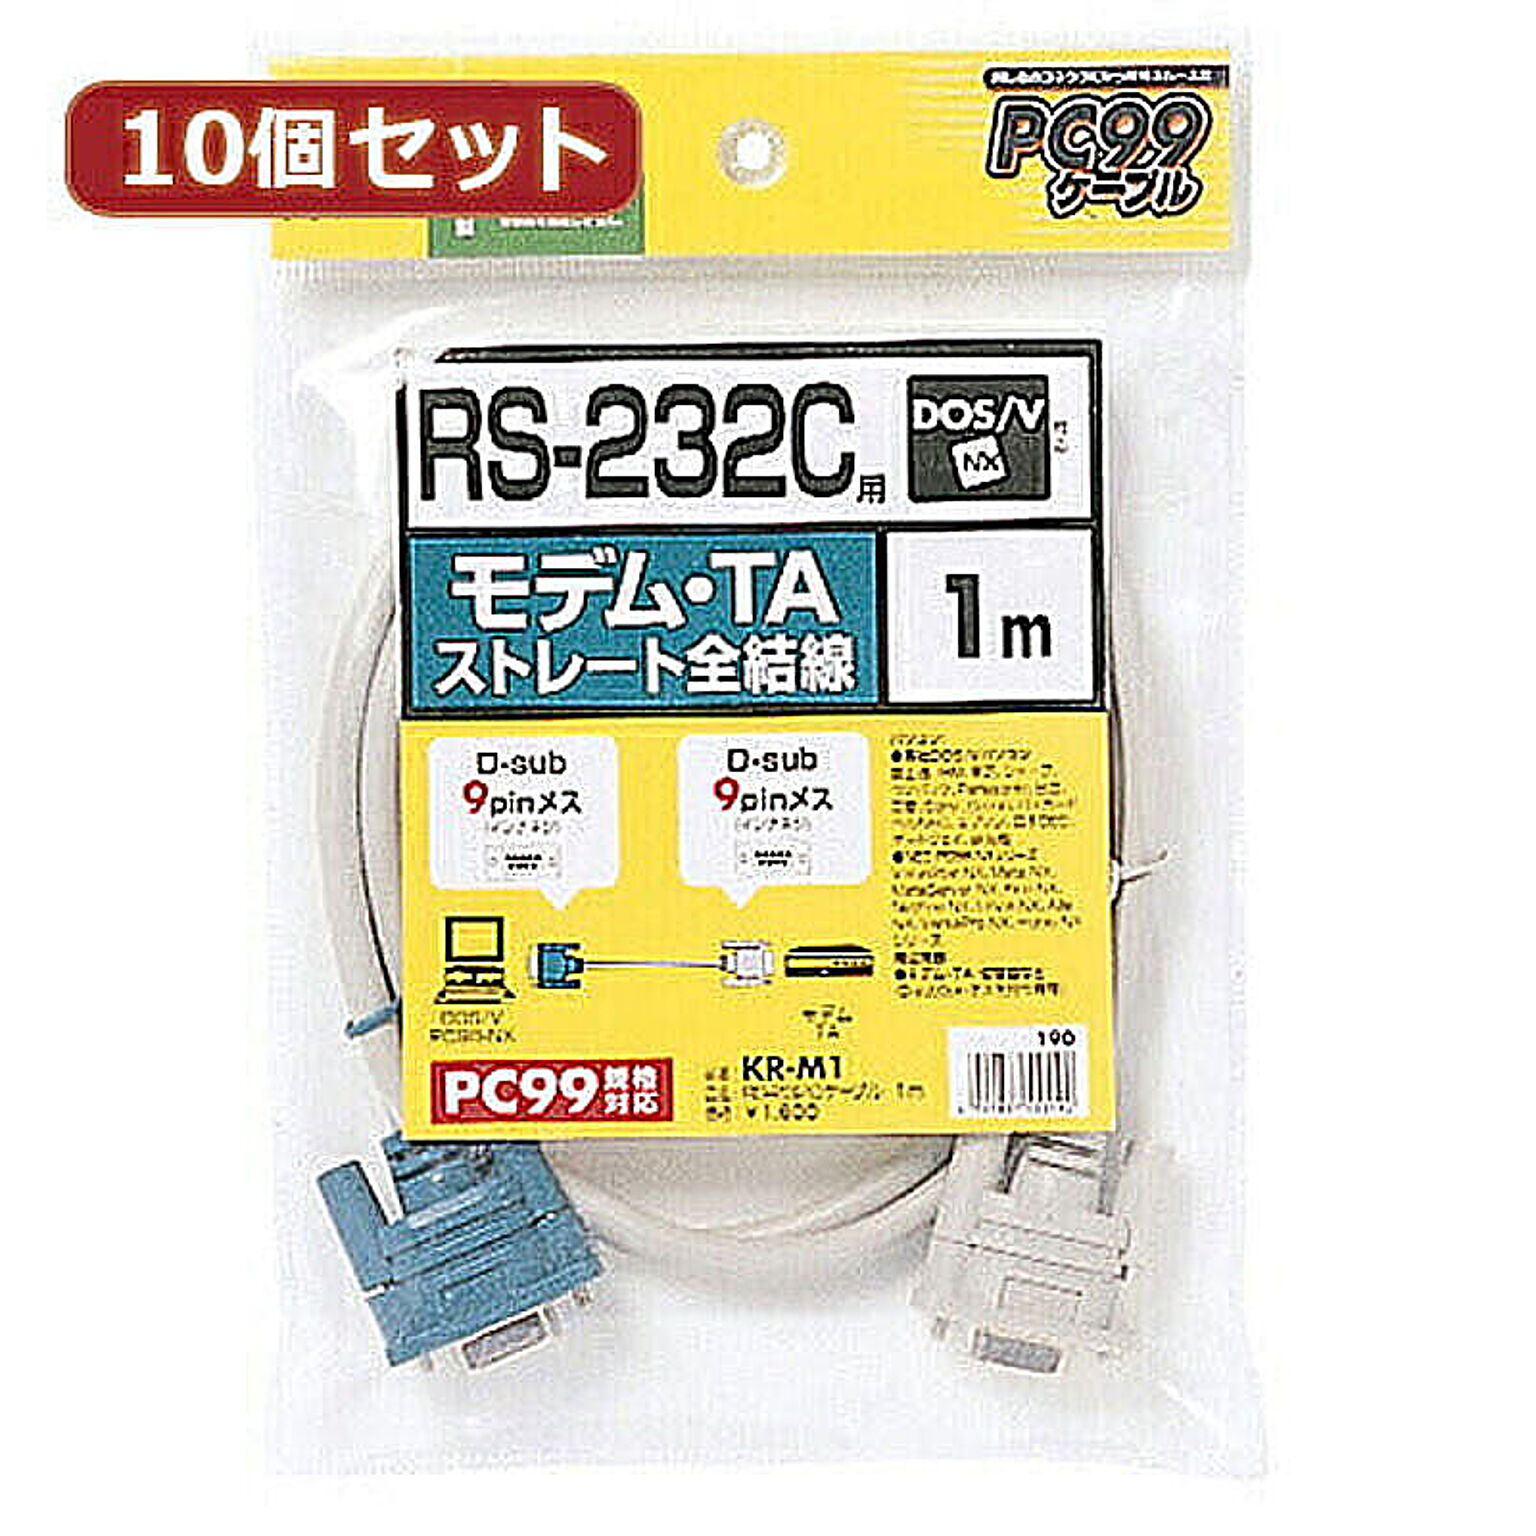 10個セットサンワサプライ RS-232Cケーブル(モデム・TA用・1m) KR-M1X10 管理No. 4589452972258